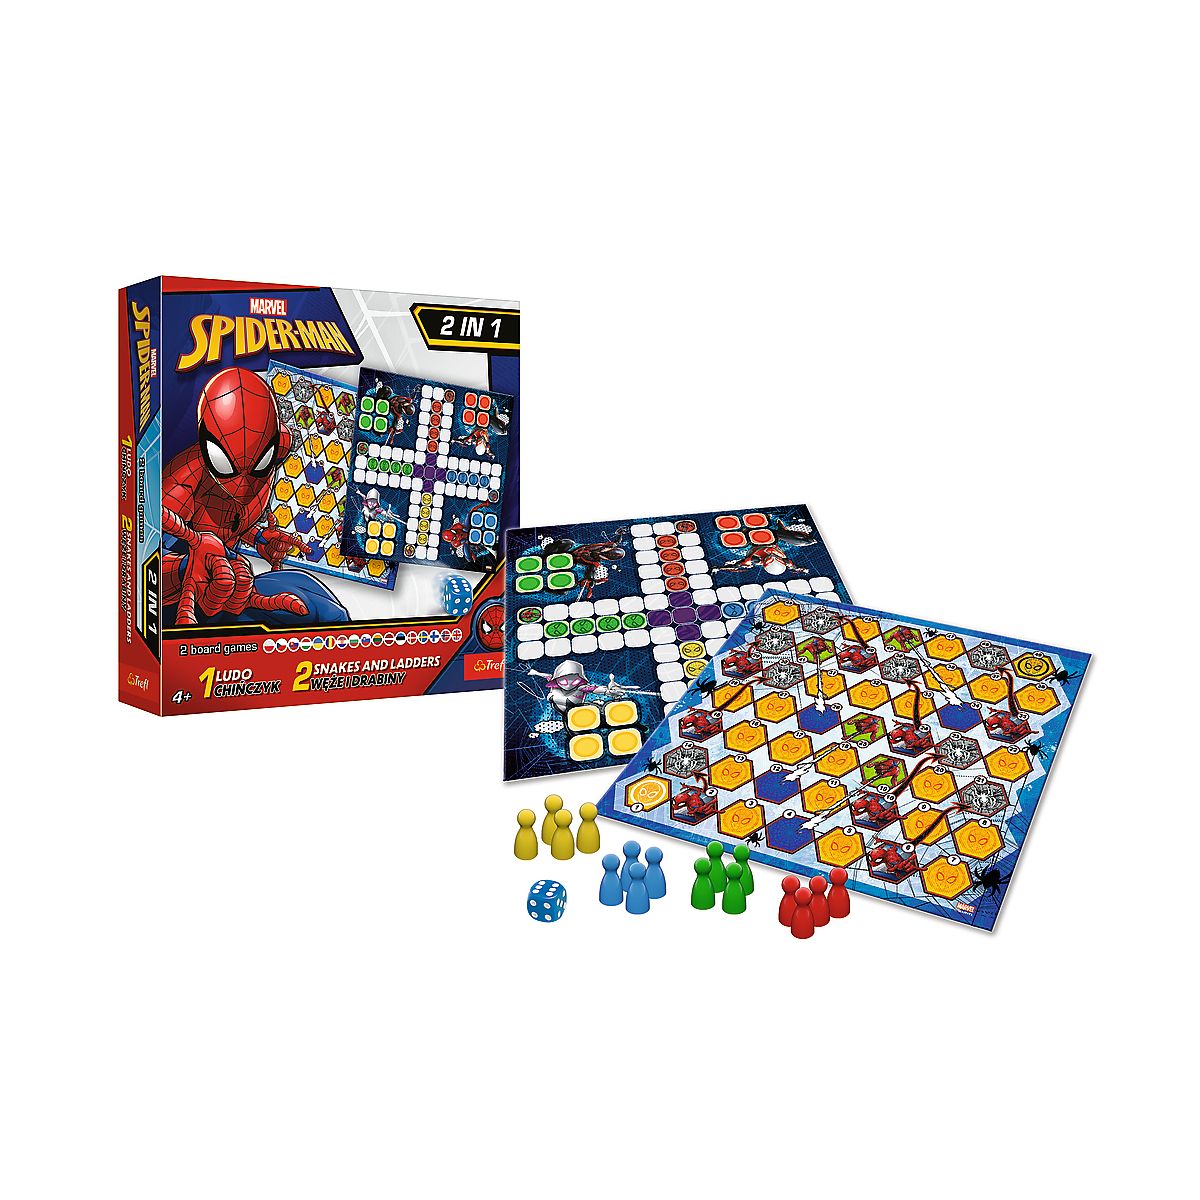 Gra planszowa Trefl 2w1 Chińczyk / Węże i drabiny - Spider-Man Chińczyk, węże i drabiny (02419)